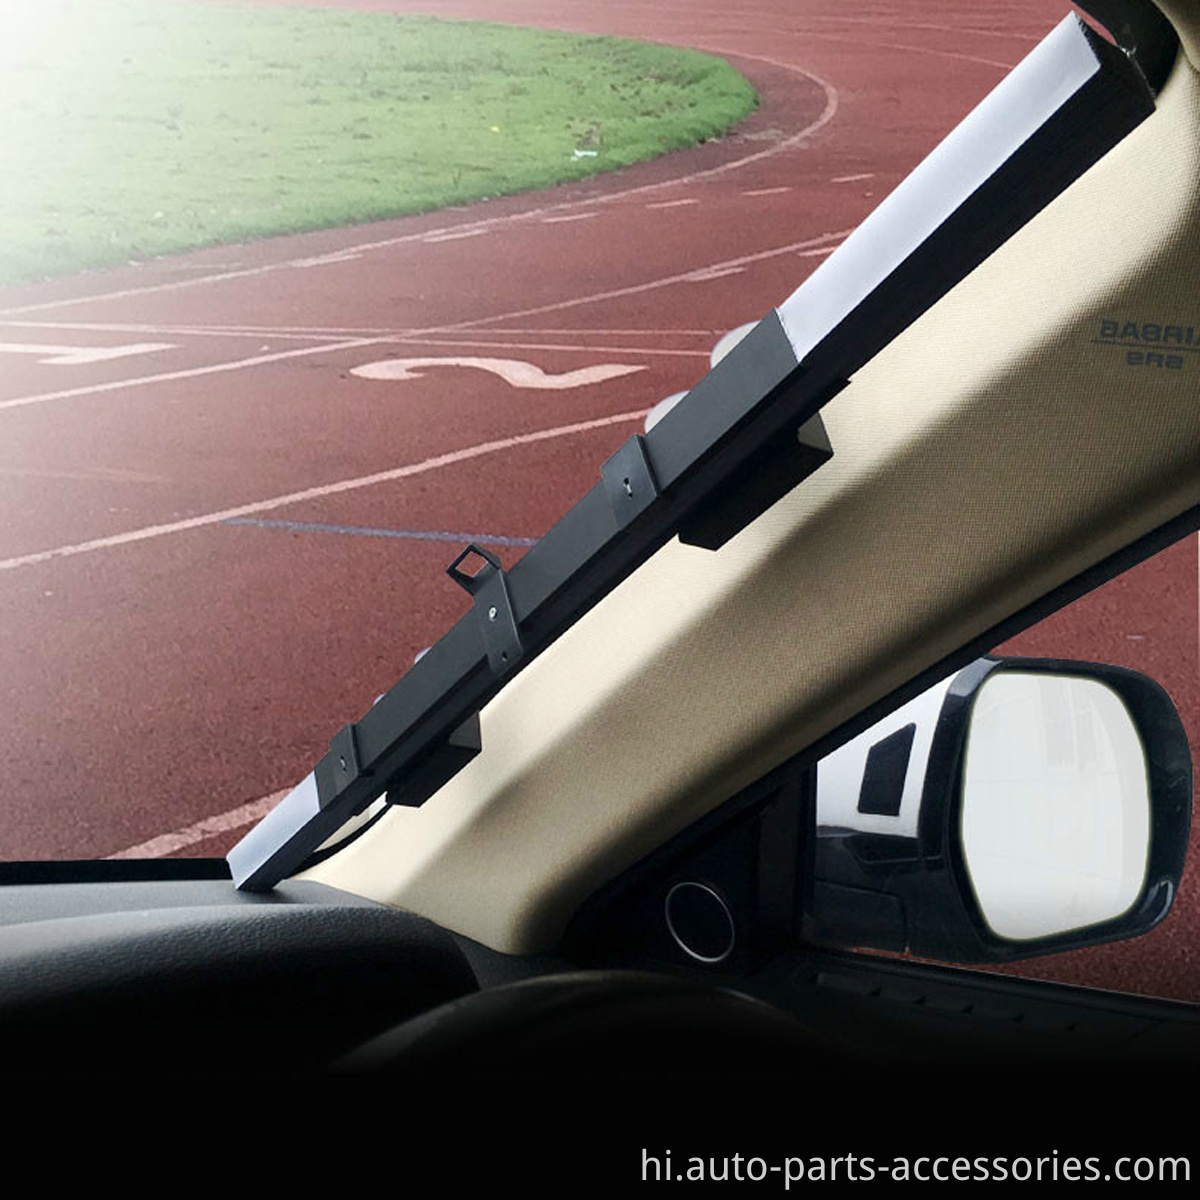 कस्टम प्रिंटिंग वापस लेने योग्य विंडस्क्रीन ऑटो सामने की खिड़की के लिए वायरलेस कार सनशेड स्थापित करें